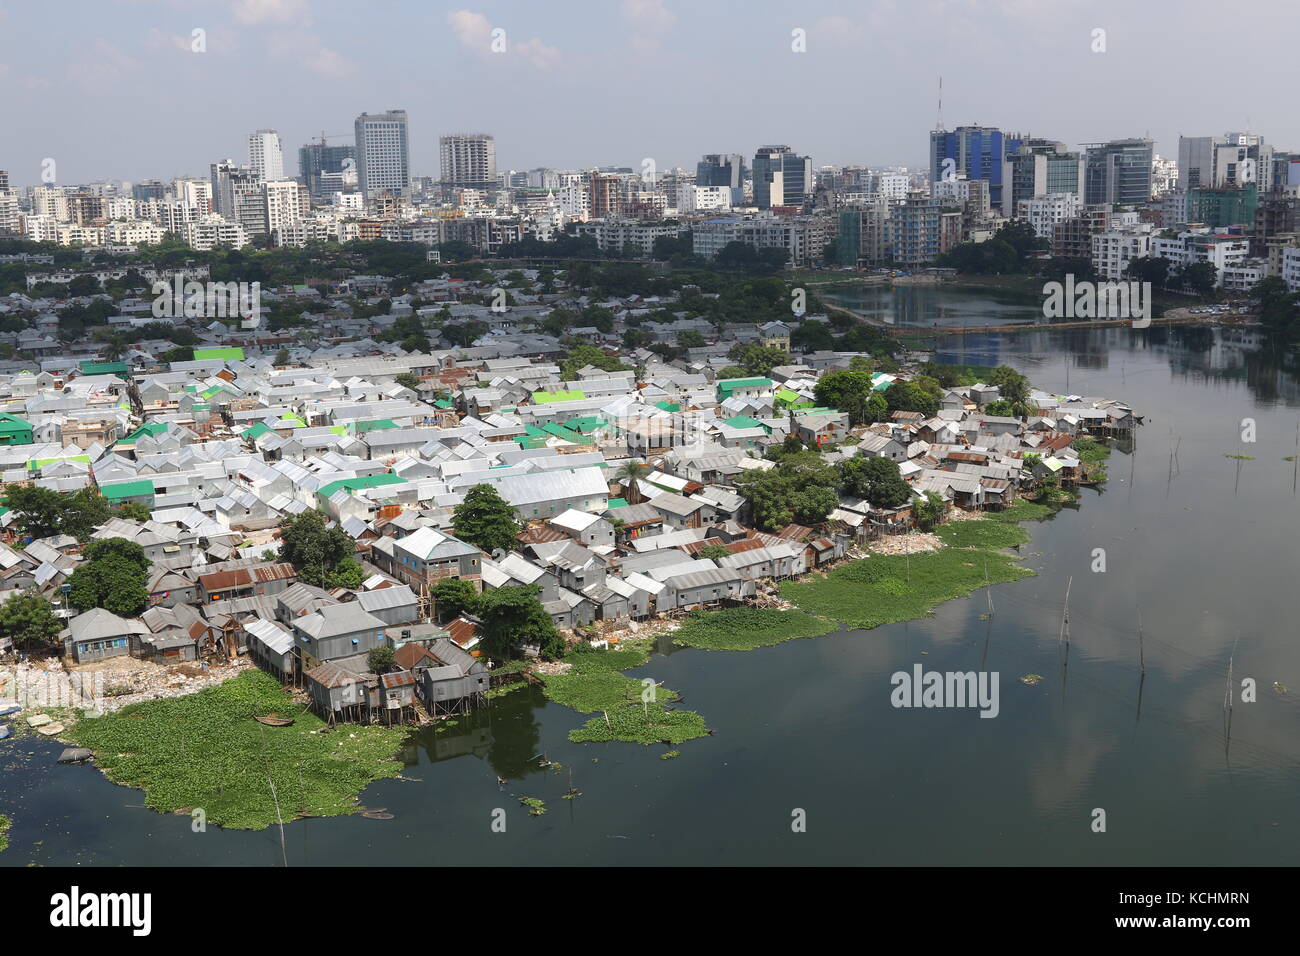 Eine Ansicht von Korail Slum, einem der größten Slums in Gulshan, Bangladesh, Dhaka, Bangladesh, 04. Okt 2017. Stockfoto